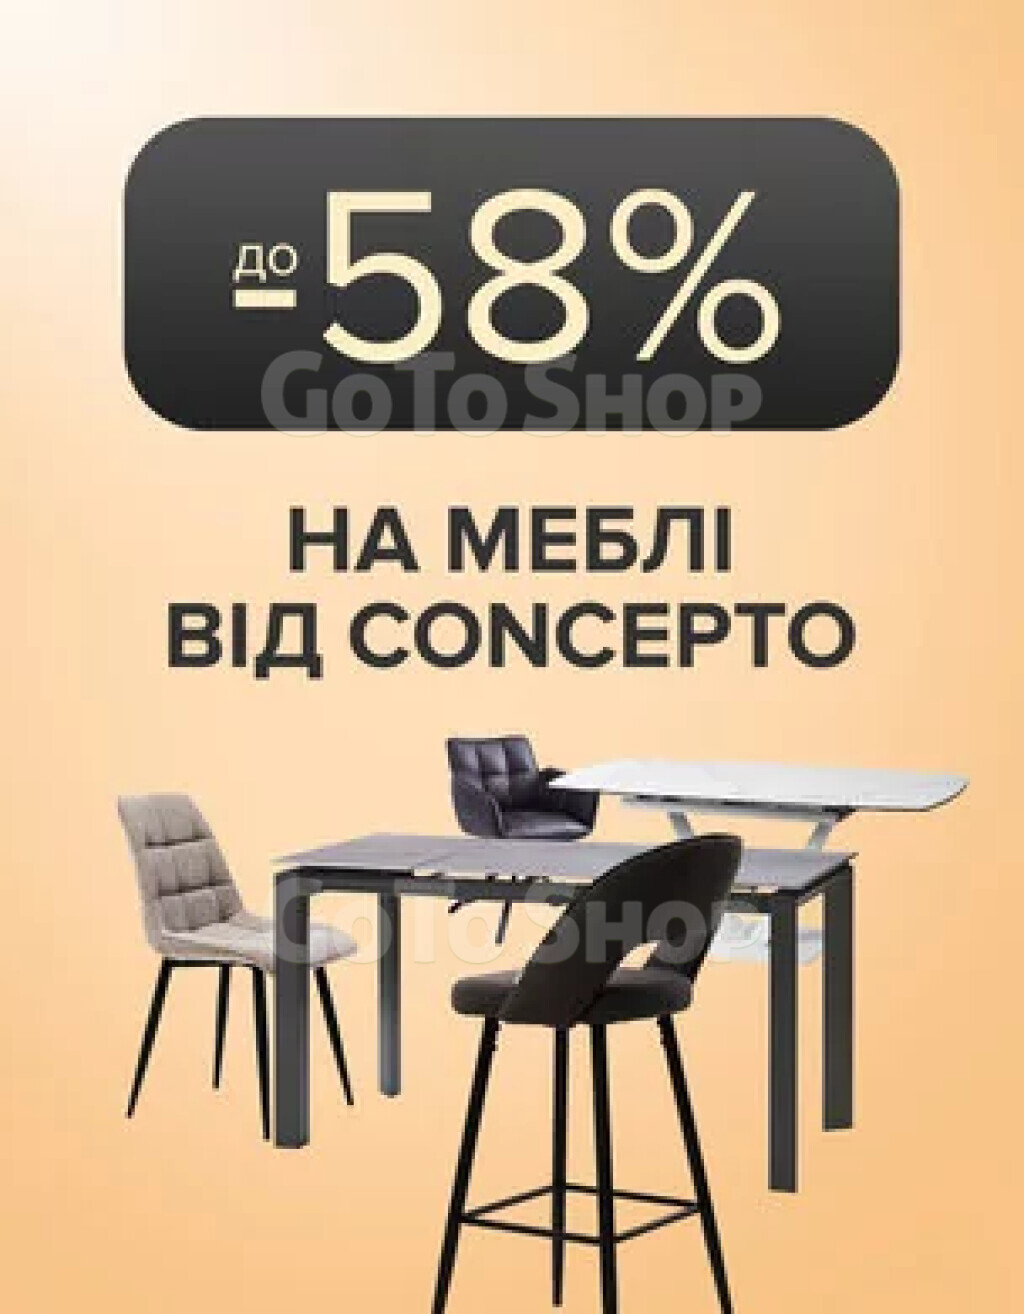 Меблі від Concepto зі знижкою до 58%